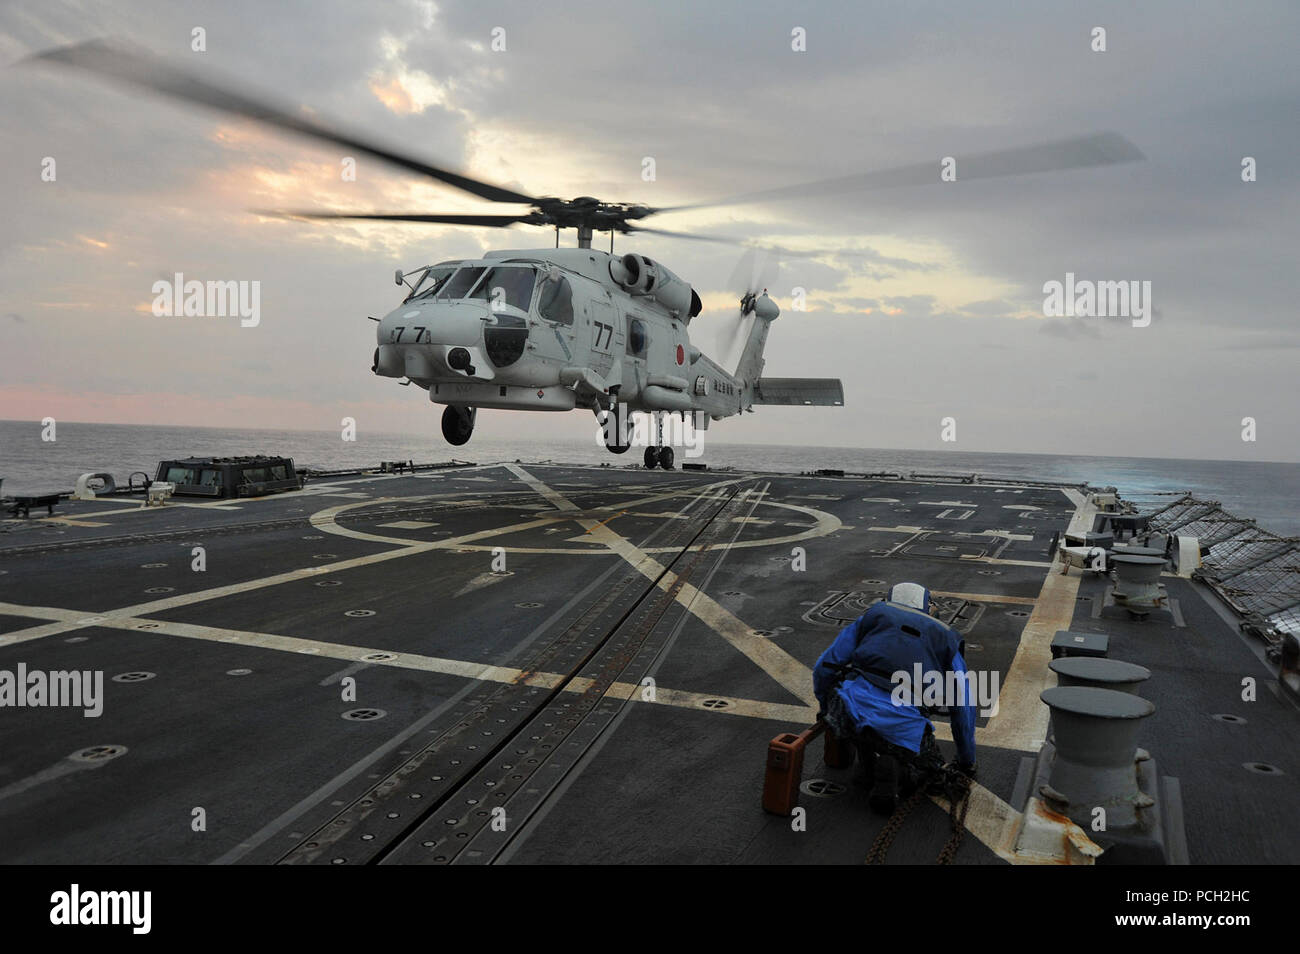 Philippinischen MEER (Nov. 13, 2012) ein Japan Maritime Verteidigung-kraft SH-60J Sea Hawk Hubschrauber landet an Bord der Arleigh-Burke-Klasse geführte Anti-raketen-Zerstörer USS McCampbell (DDG85) während eine maritime Übung entwickelt, Interoperabilität und die Beziehungen zwischen den Nationen zu verbessern. McCampbell ist Teil der George Washington Carrier Strike Group, die US-Marine ist nur kontinuierlich vorwärts - eingesetzt Carrier strike Group, Yokosuka, Japan, und ist die Durchführung einer routinemäßigen Western Pacific Patrol zur Unterstützung der regionalen Sicherheit und Stabilität in der asiatisch-pazifischen Region von entscheidender Bedeutung. Die US-Marine Stockfoto